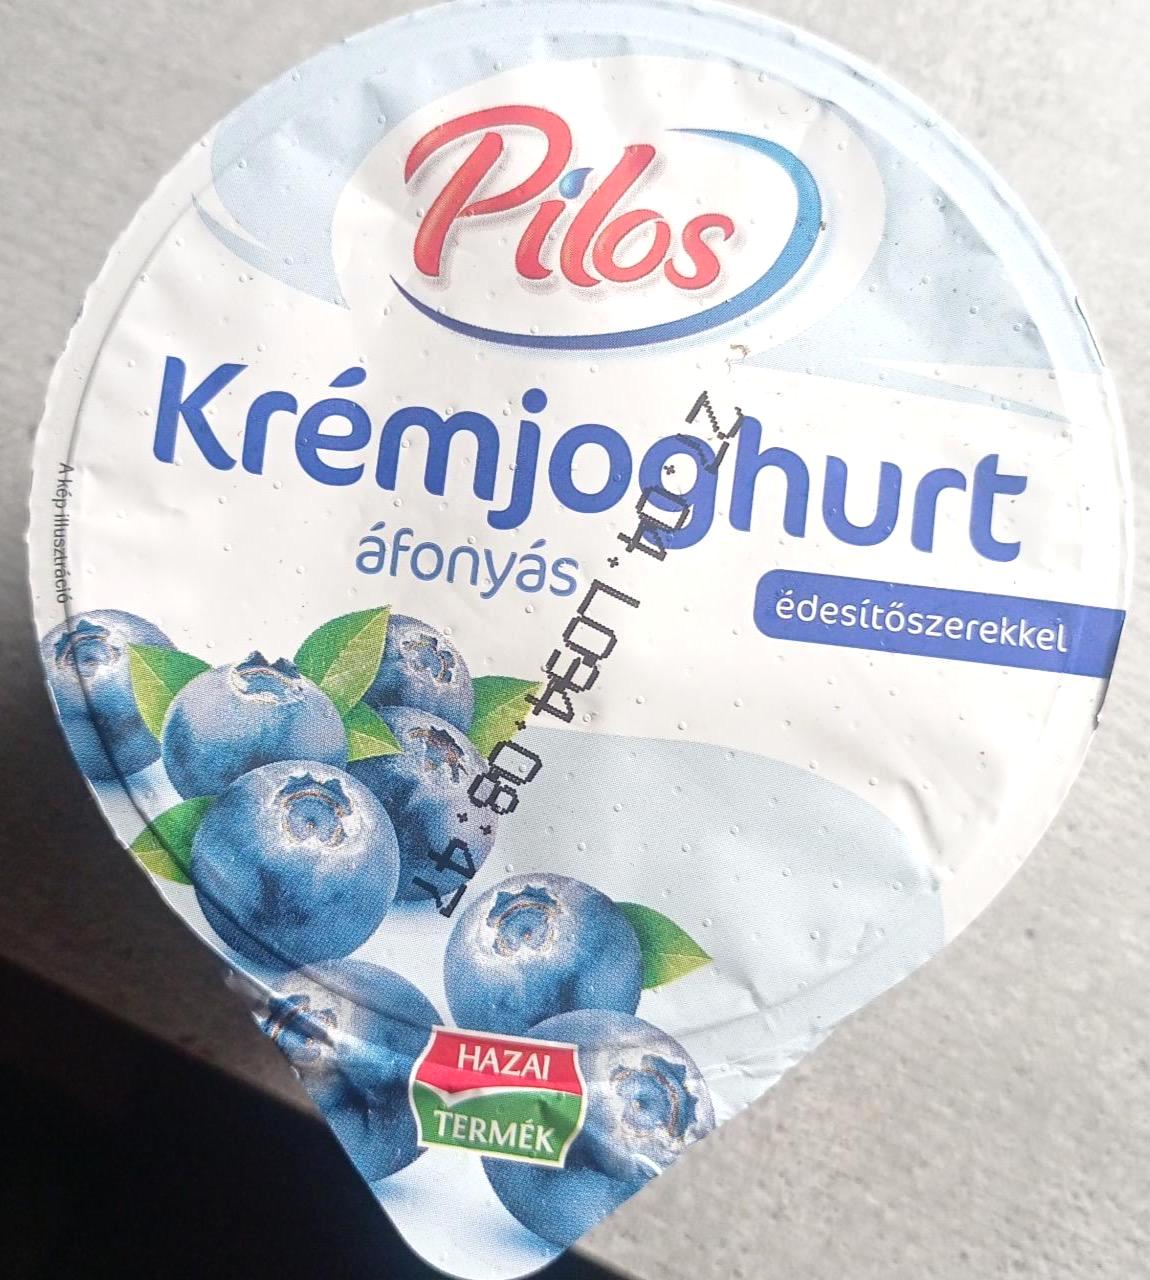 Fotografie - Krémjohurt áfonyas édesítőszerekkel Pilos